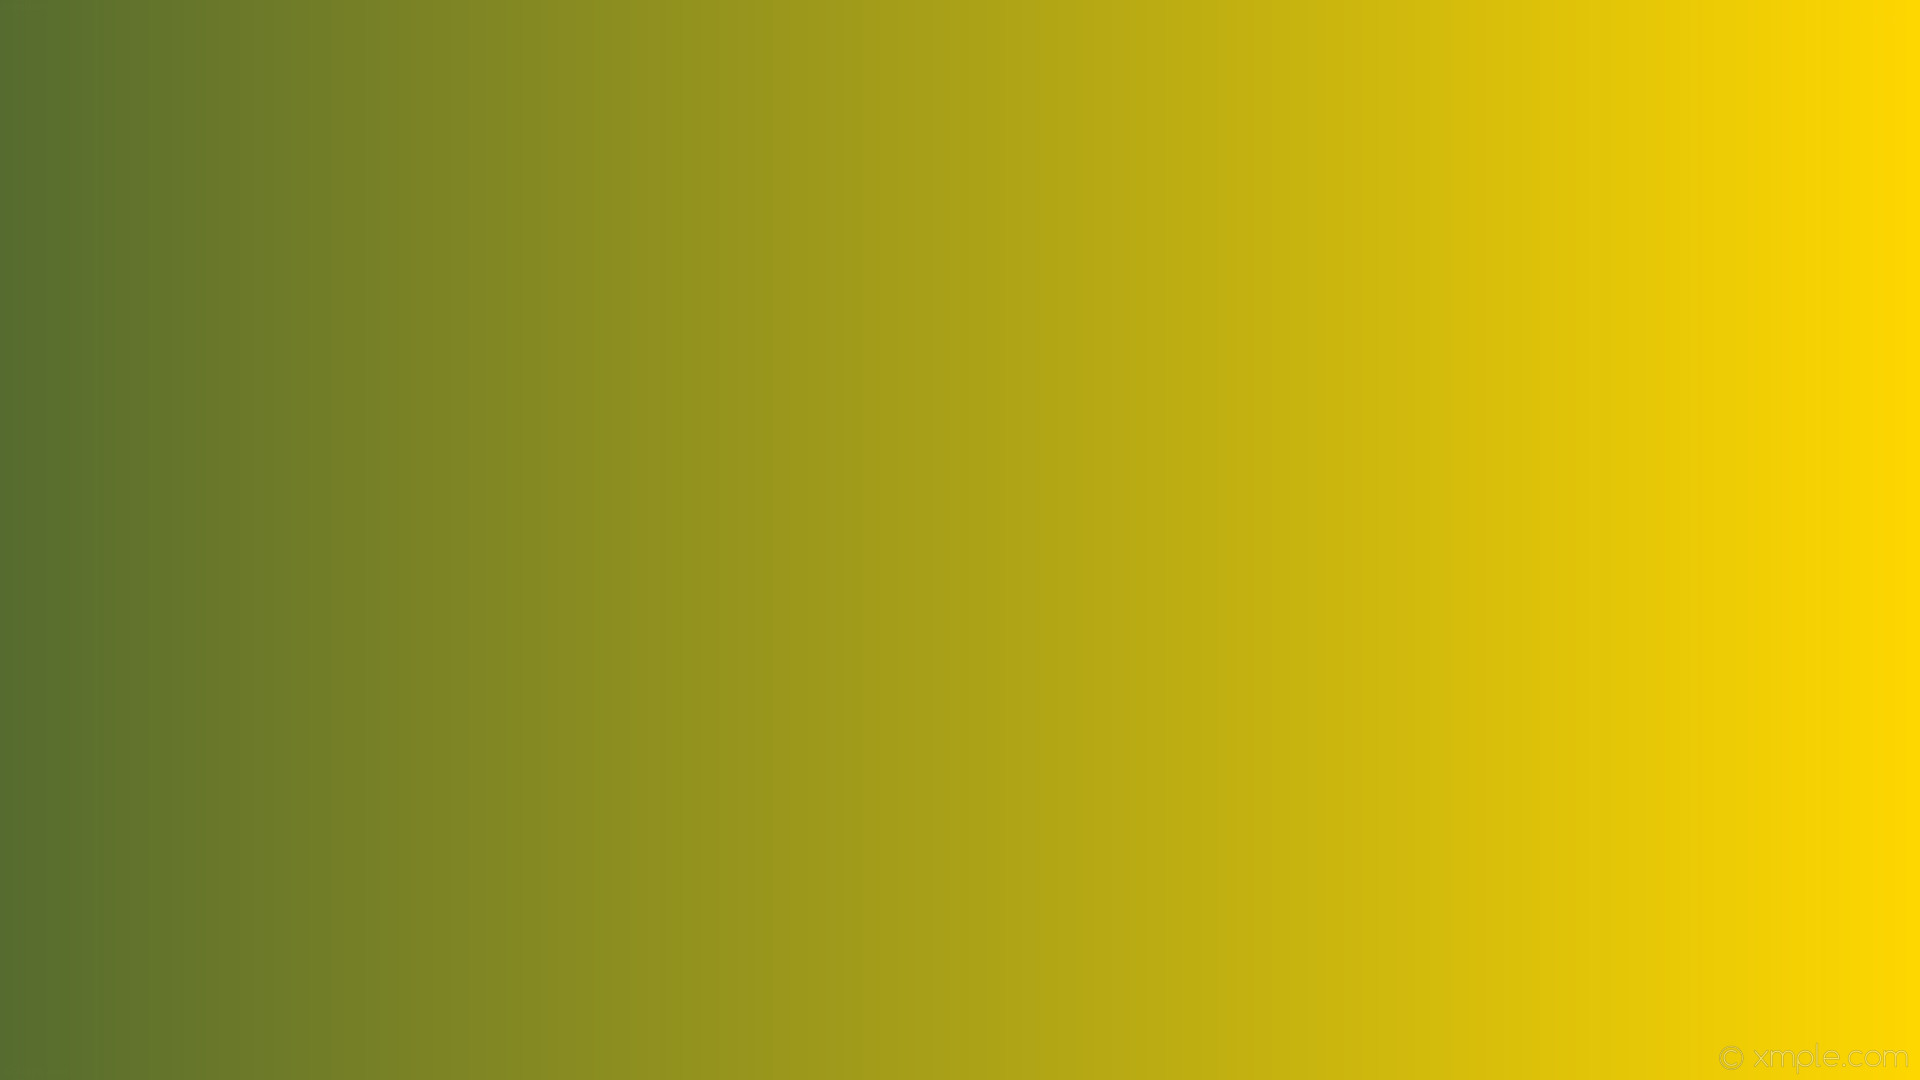 1920x1080 wallpaper yellow gradient linear green gold dark olive green #ffd700  #556b2f 0Â°